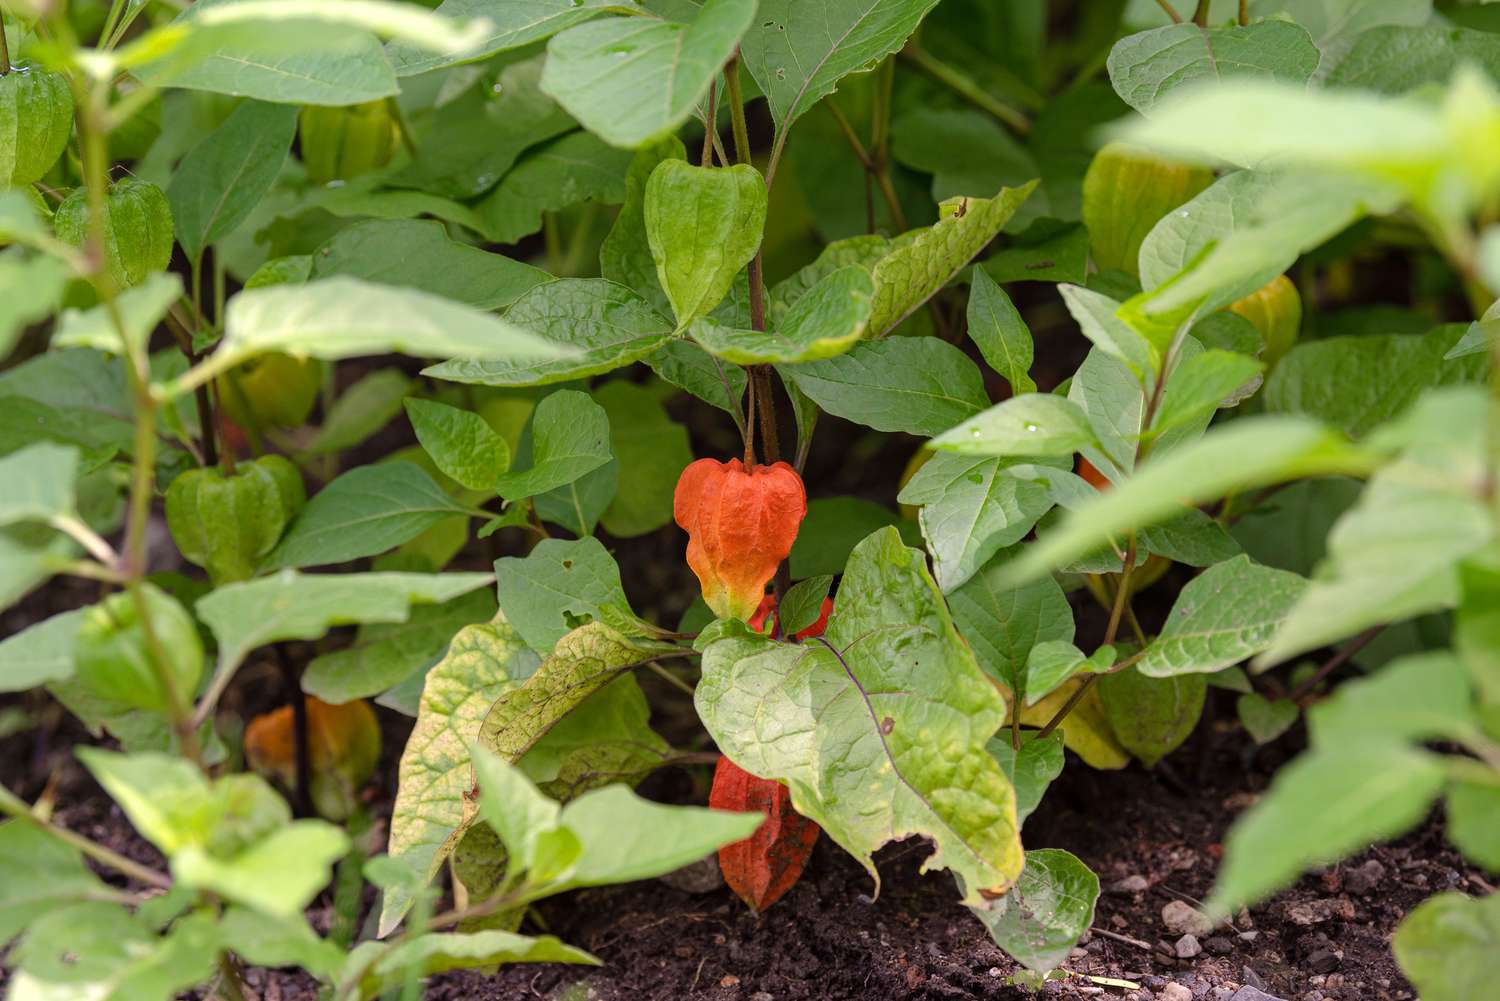 Chinesische Lampionpflanze mit orangefarbenen, papierartigen Samenkapseln, die an langen mittelgrünen Blättern hängen